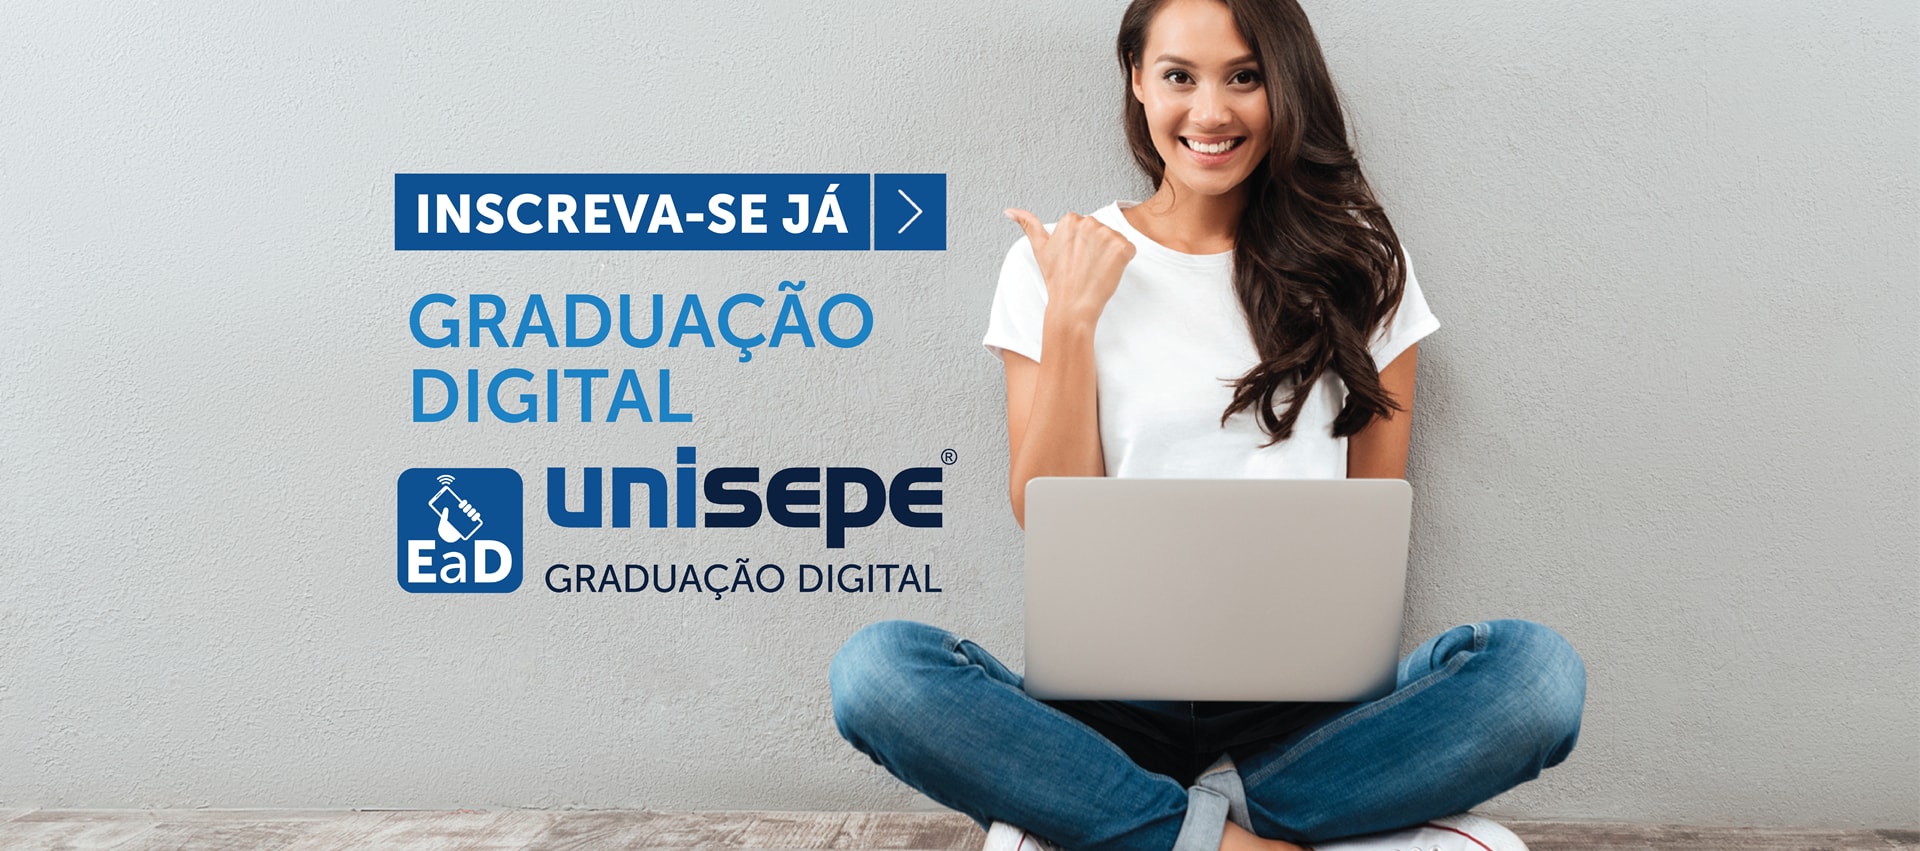 Graduação Digital inscreva-se já - Graduação digital | UNISEPE